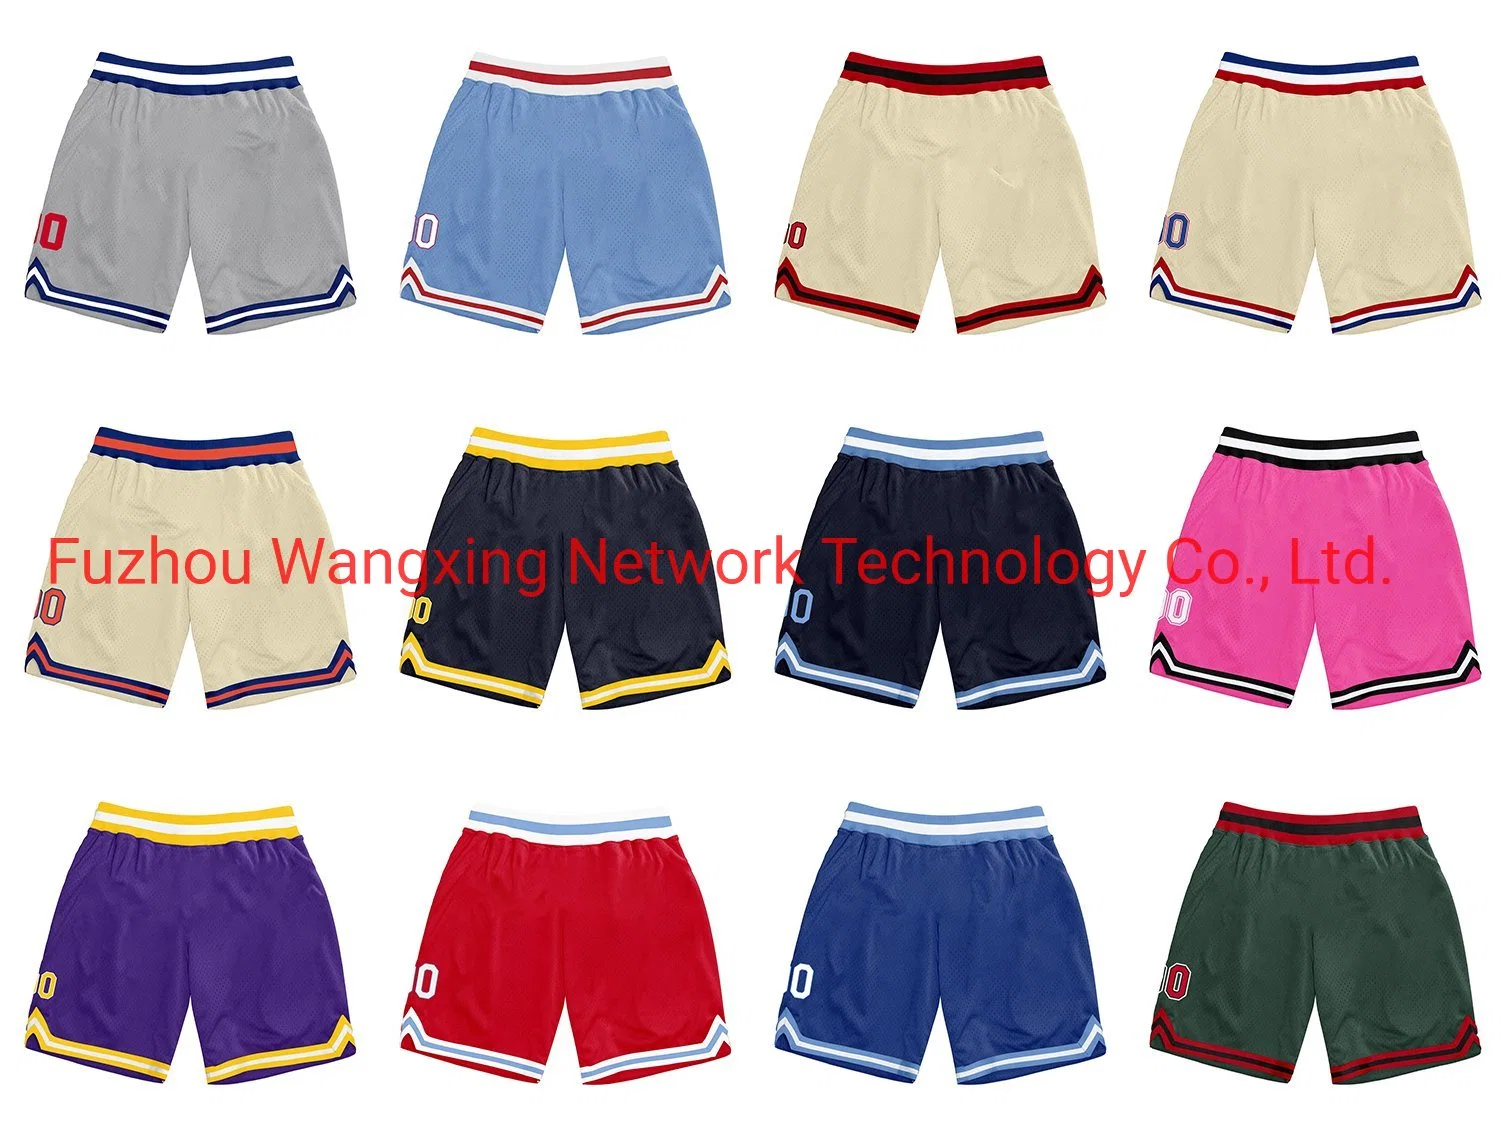 OEM-шорты дизайн вышитый напечатано оптовой высокое качество пользовательских мужчин сетка баскетбольная коротких замыканий